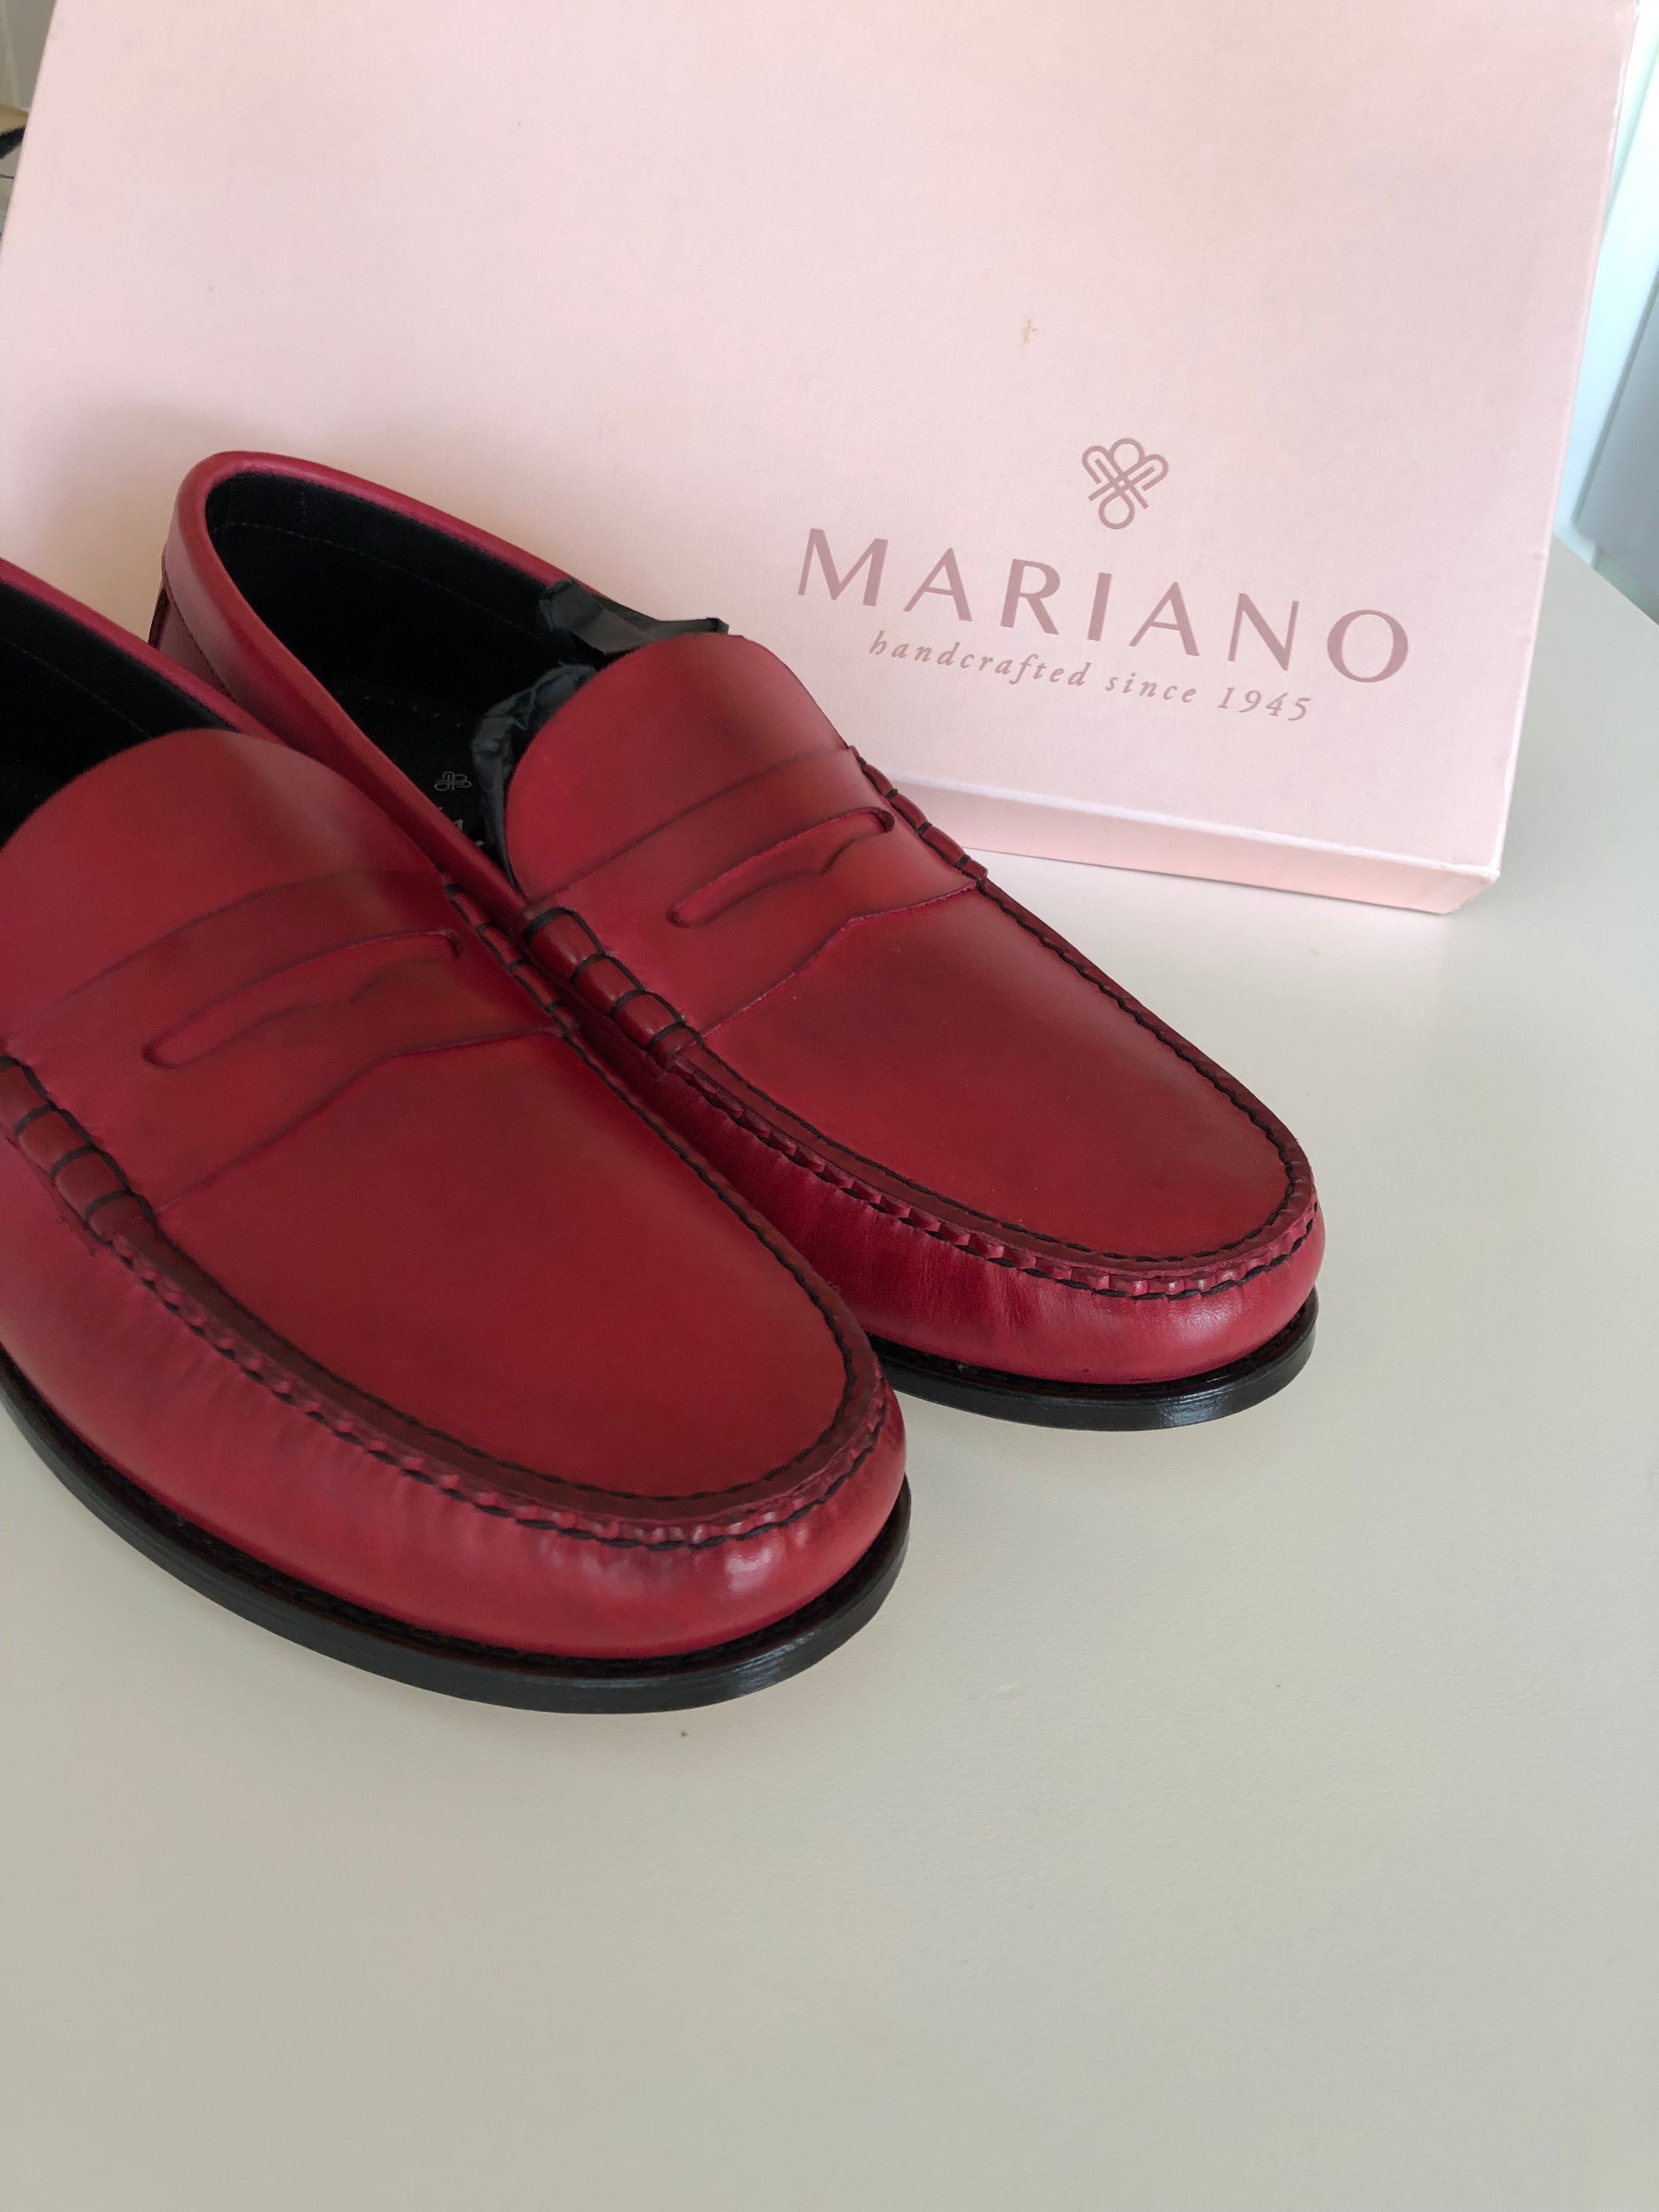 Novo - Sapatos Alvor - 38 - Mariano